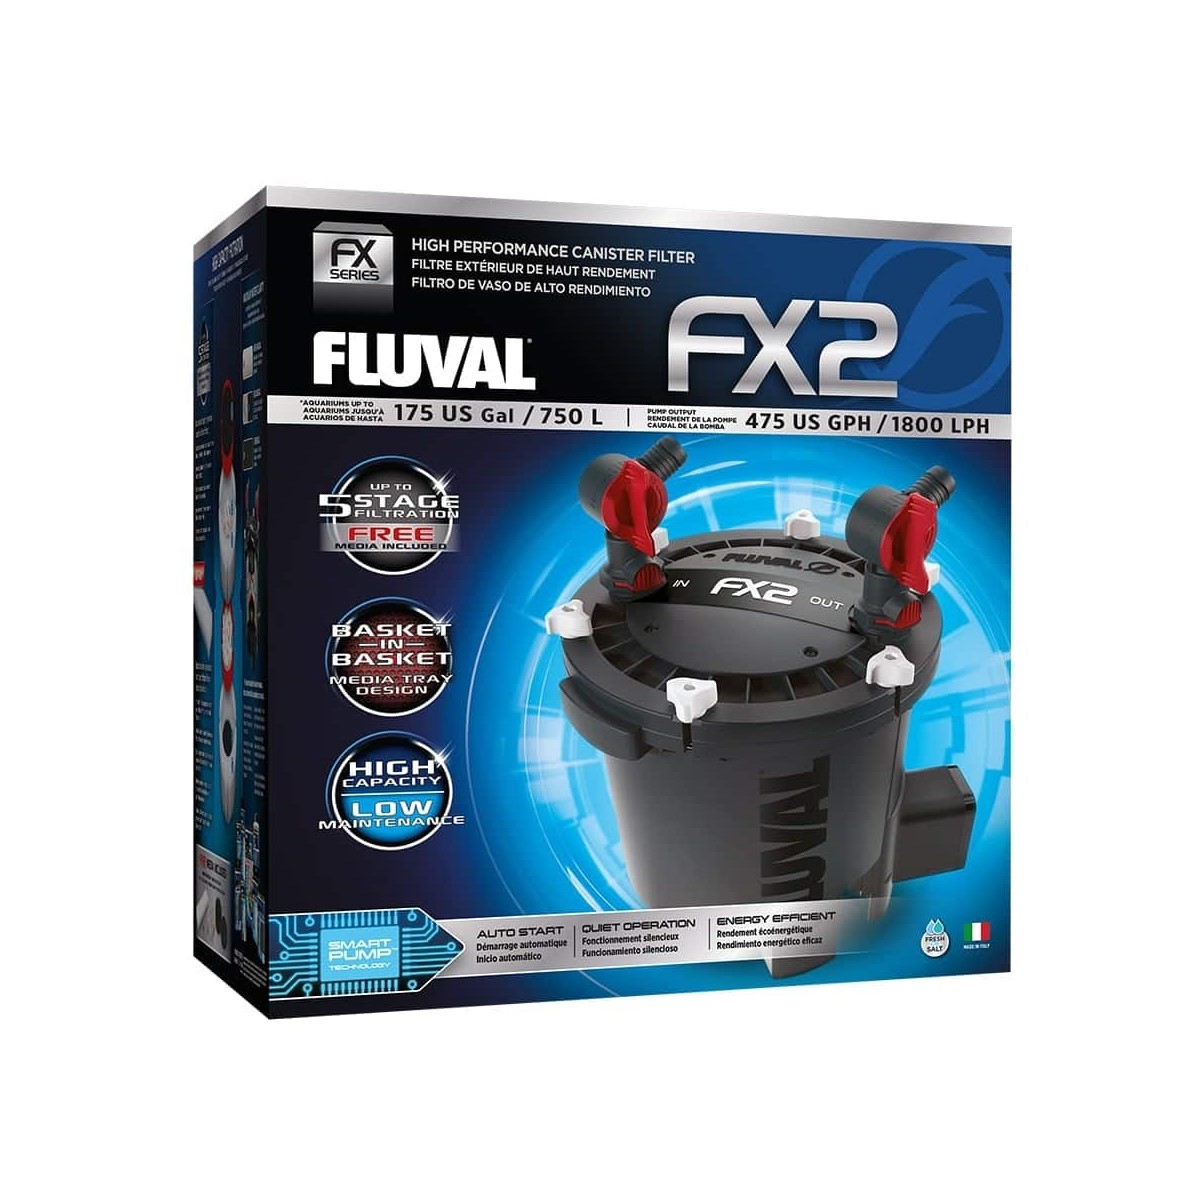 Filtro exterior Fluval FX2 para acuarios hasta 750L